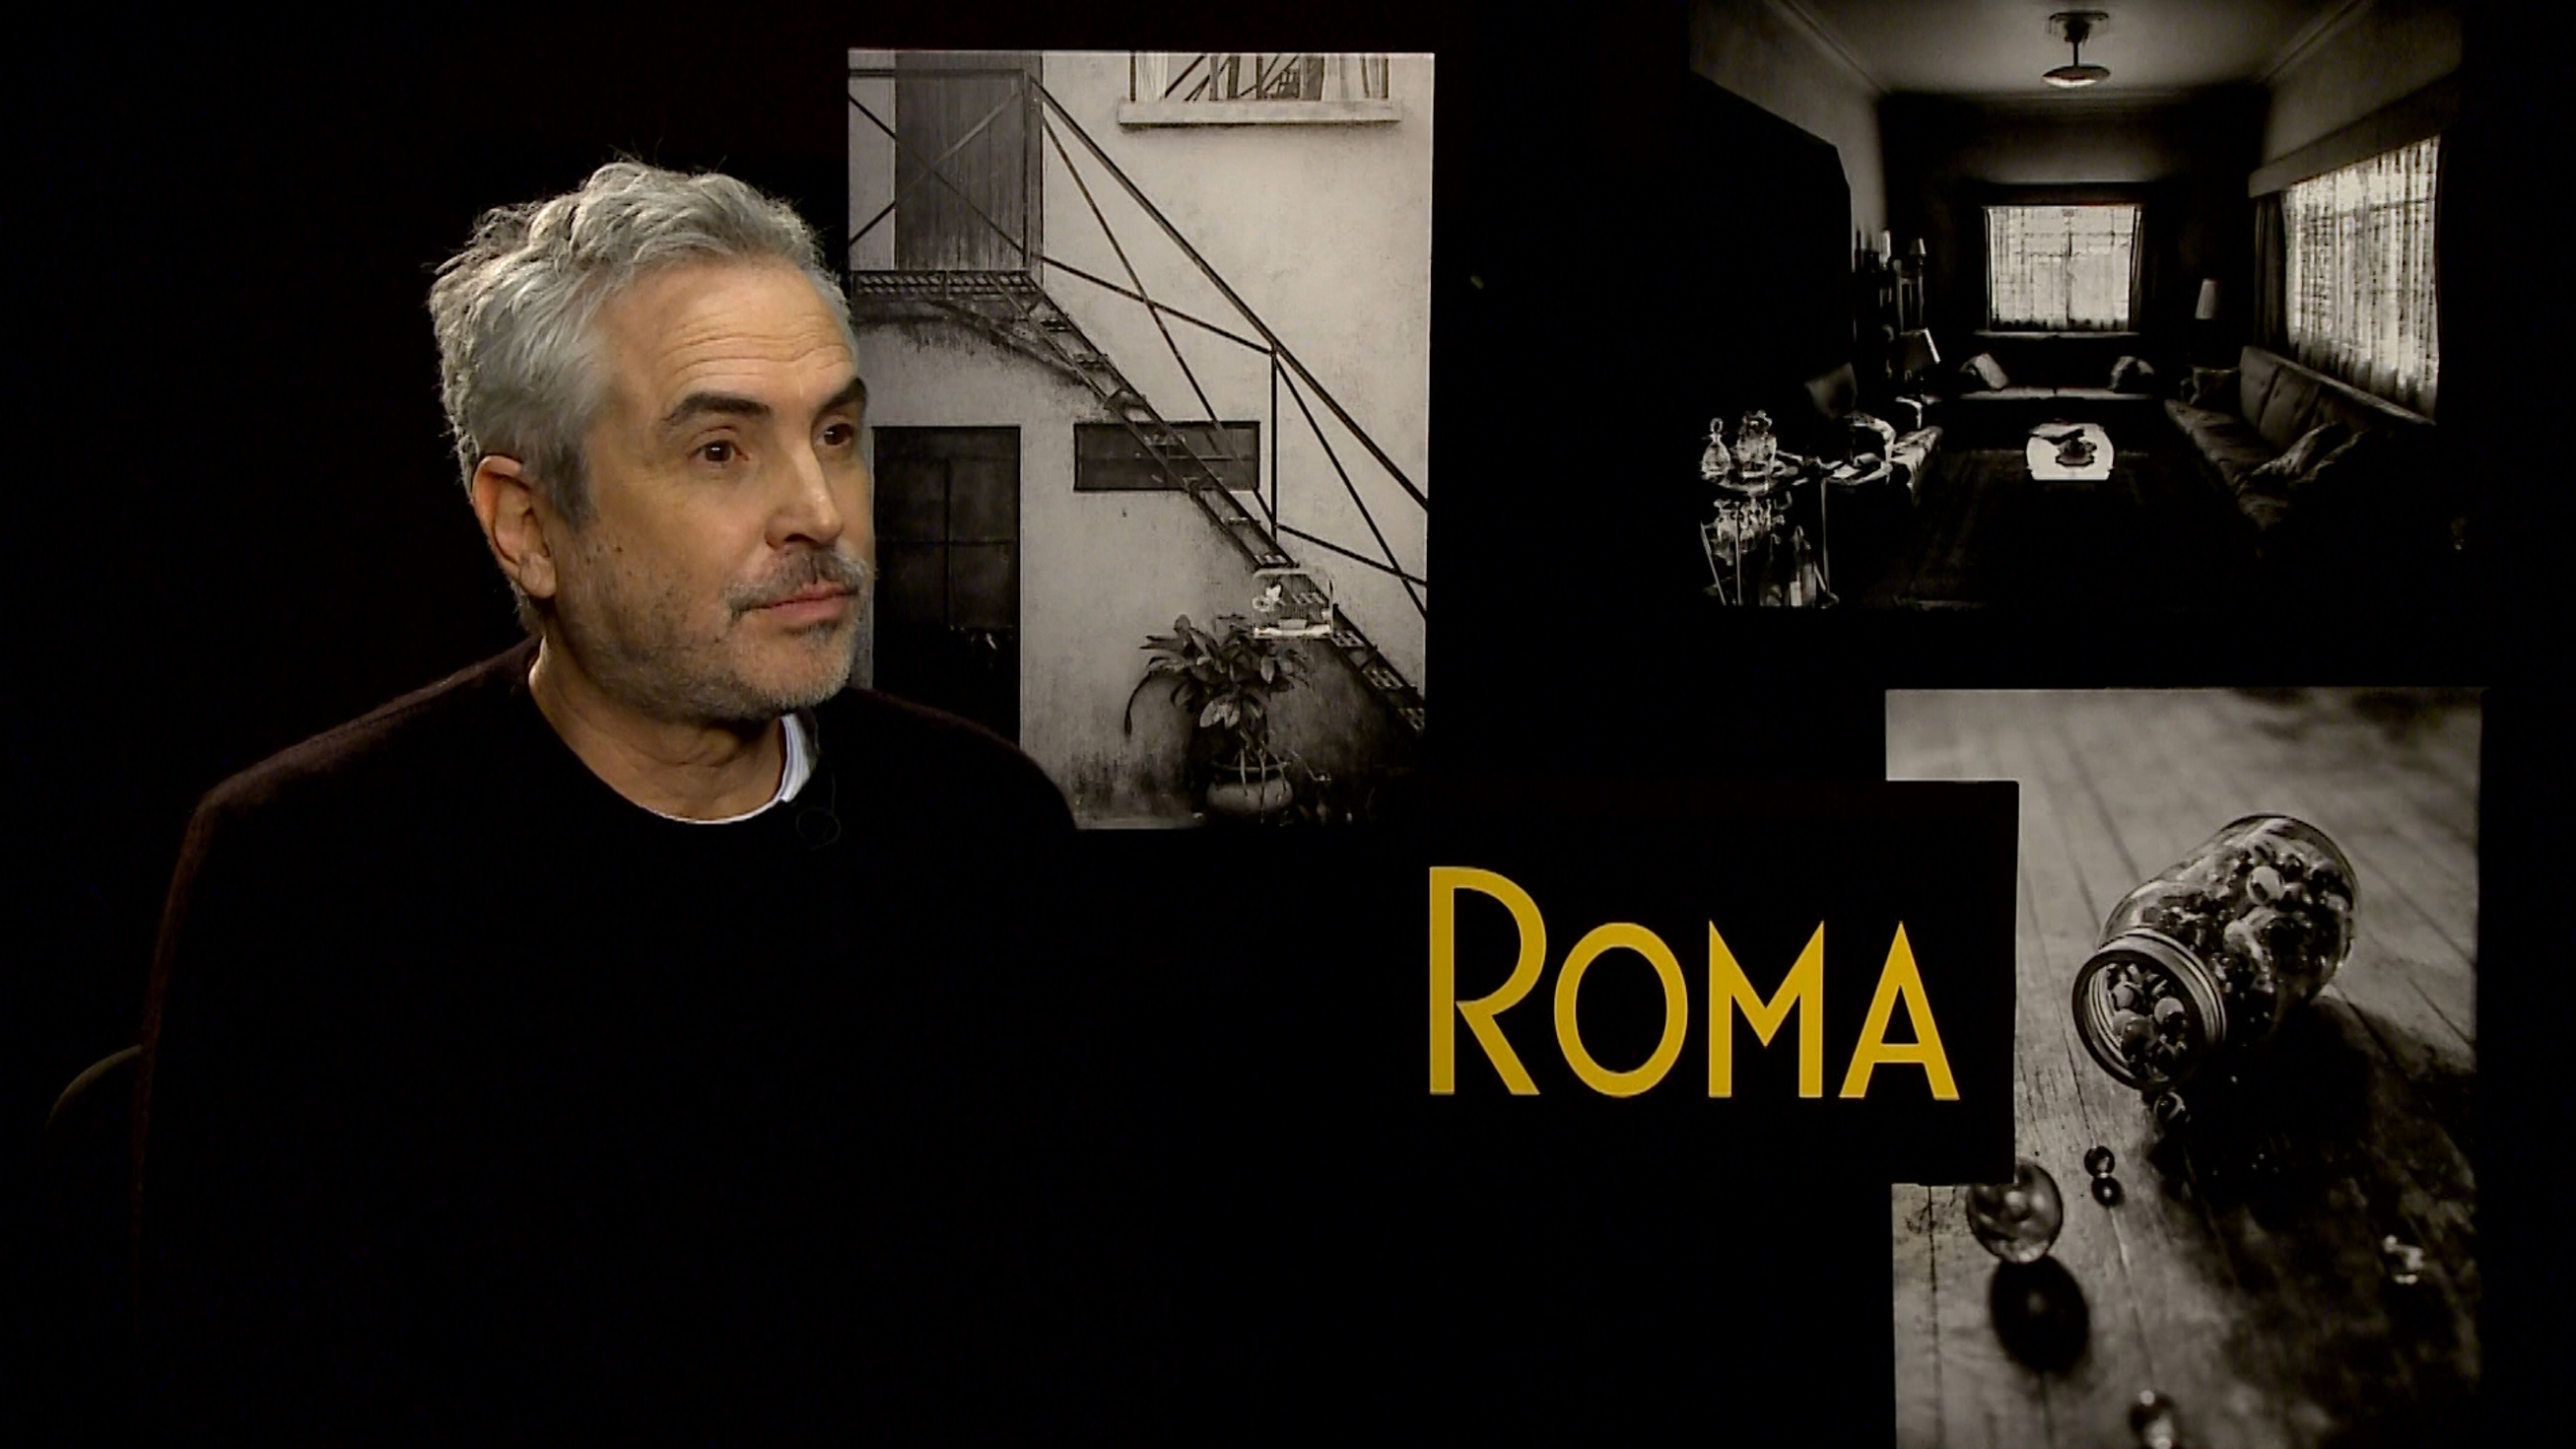 Película “Roma” es un garbanzo de a libra, asegura Director de TV UNAM